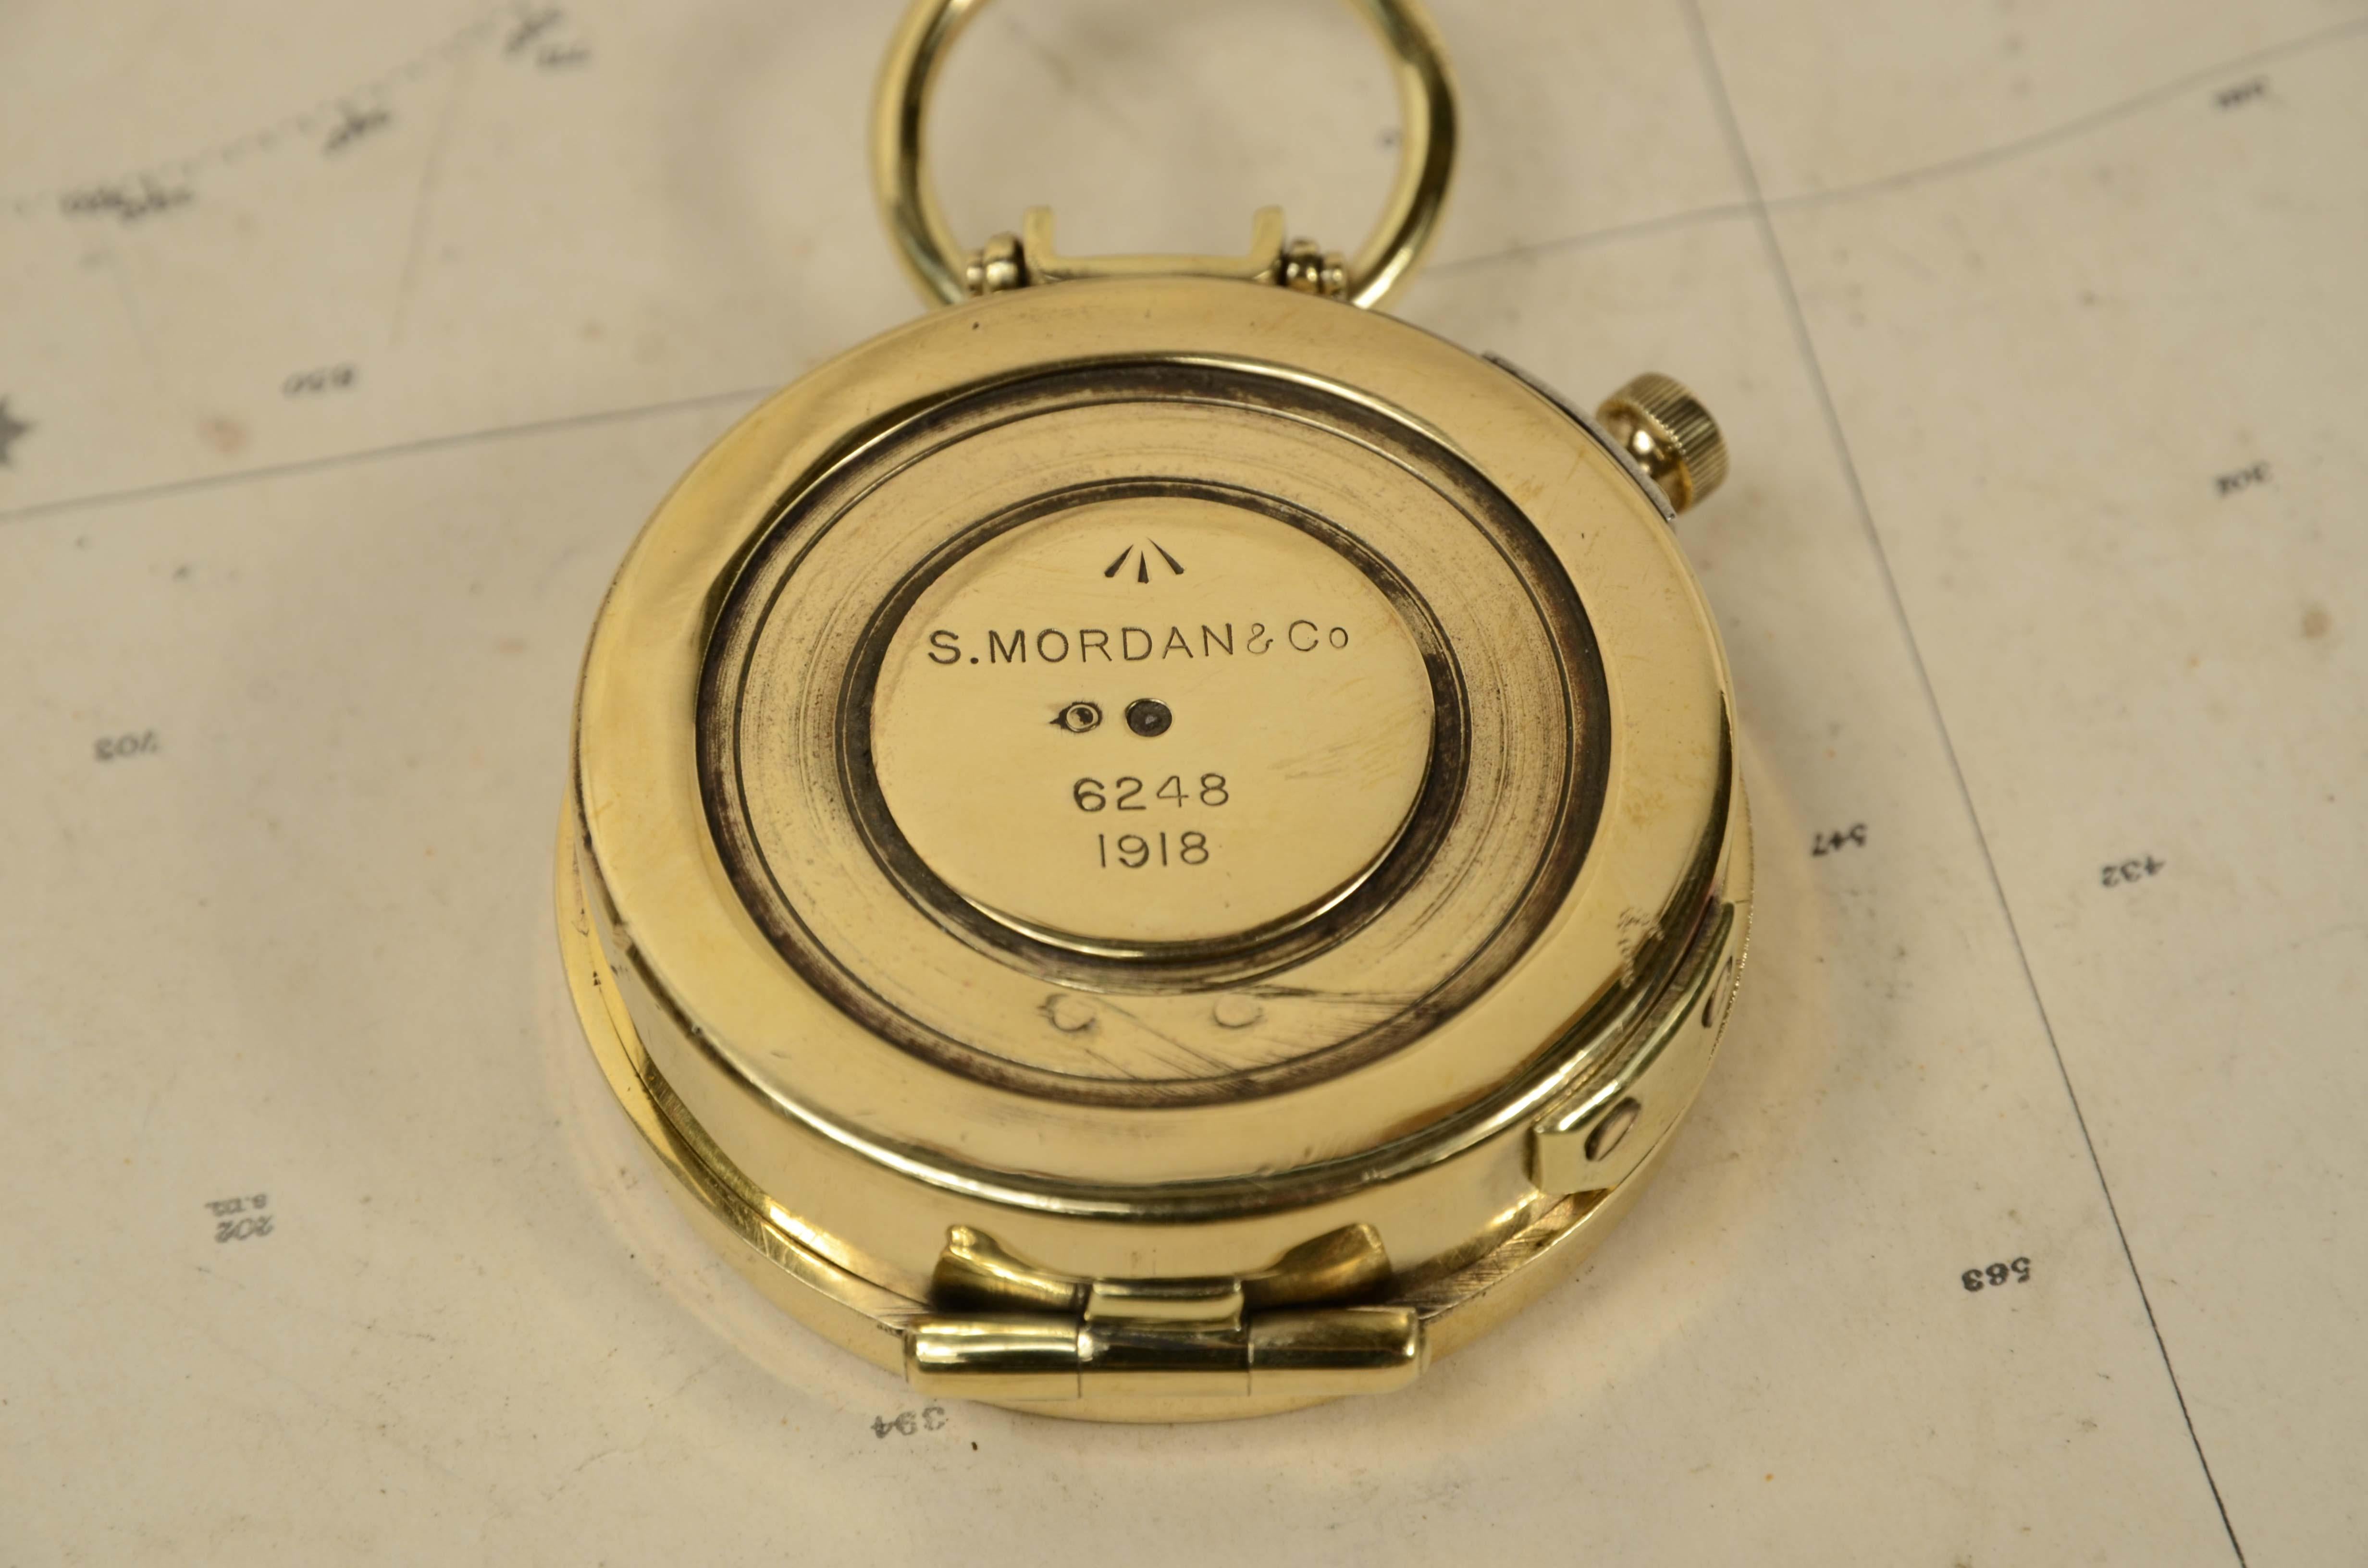 Bussola nautica da tasca in ottone del 1918  firmata S. Mordan & Co n. 6248. 6